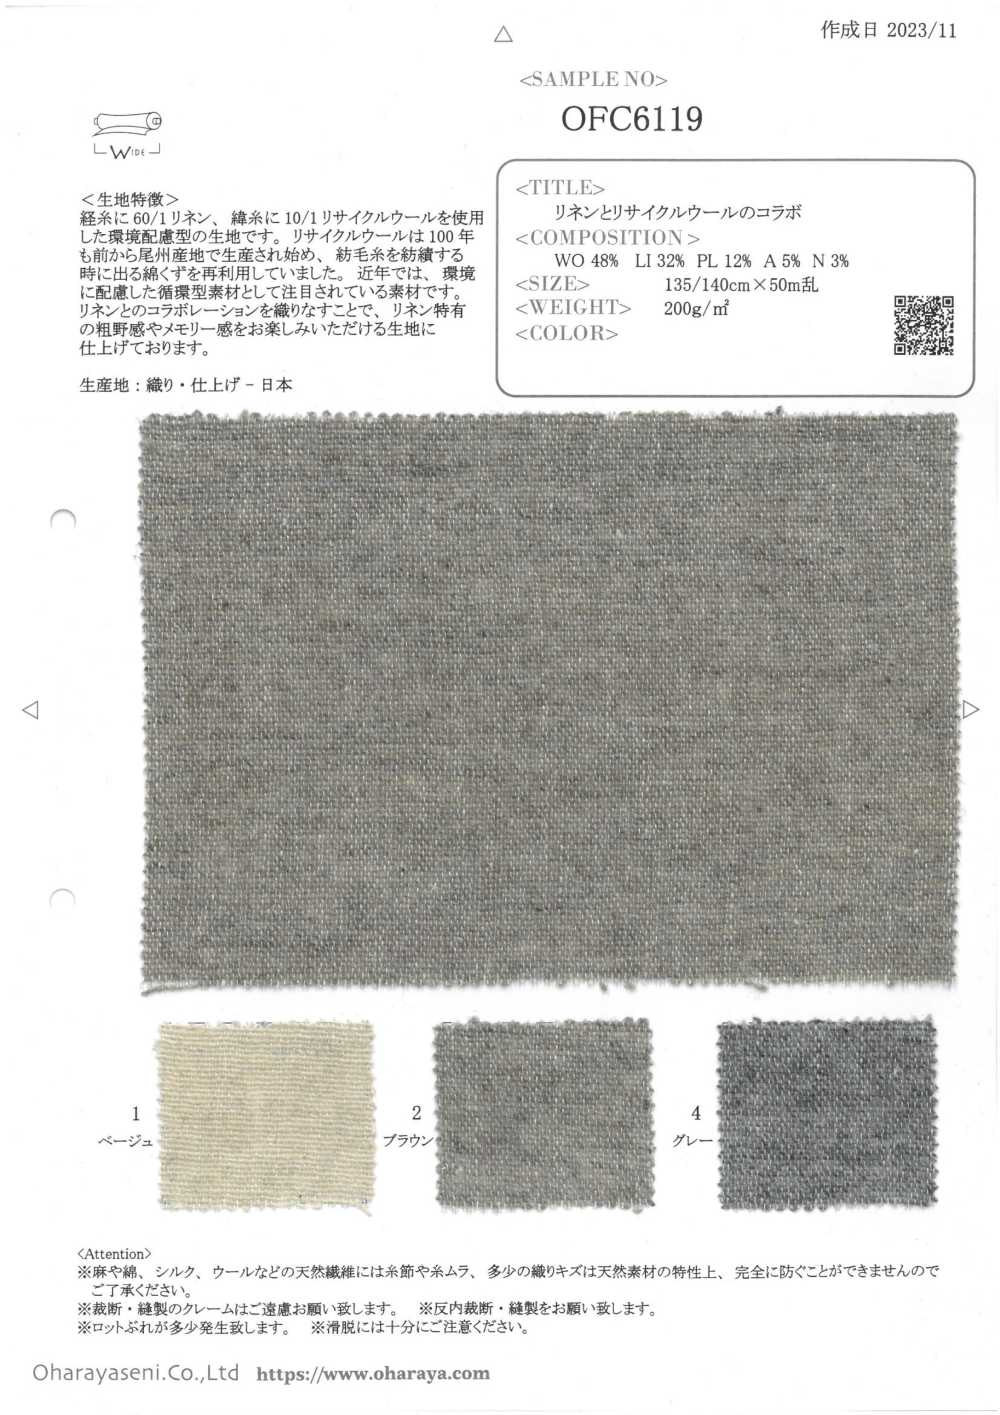 OFC6119 Zusammenarbeit Aus Leinen Und Recycelter Wolle[Textilgewebe] Oharayaseni